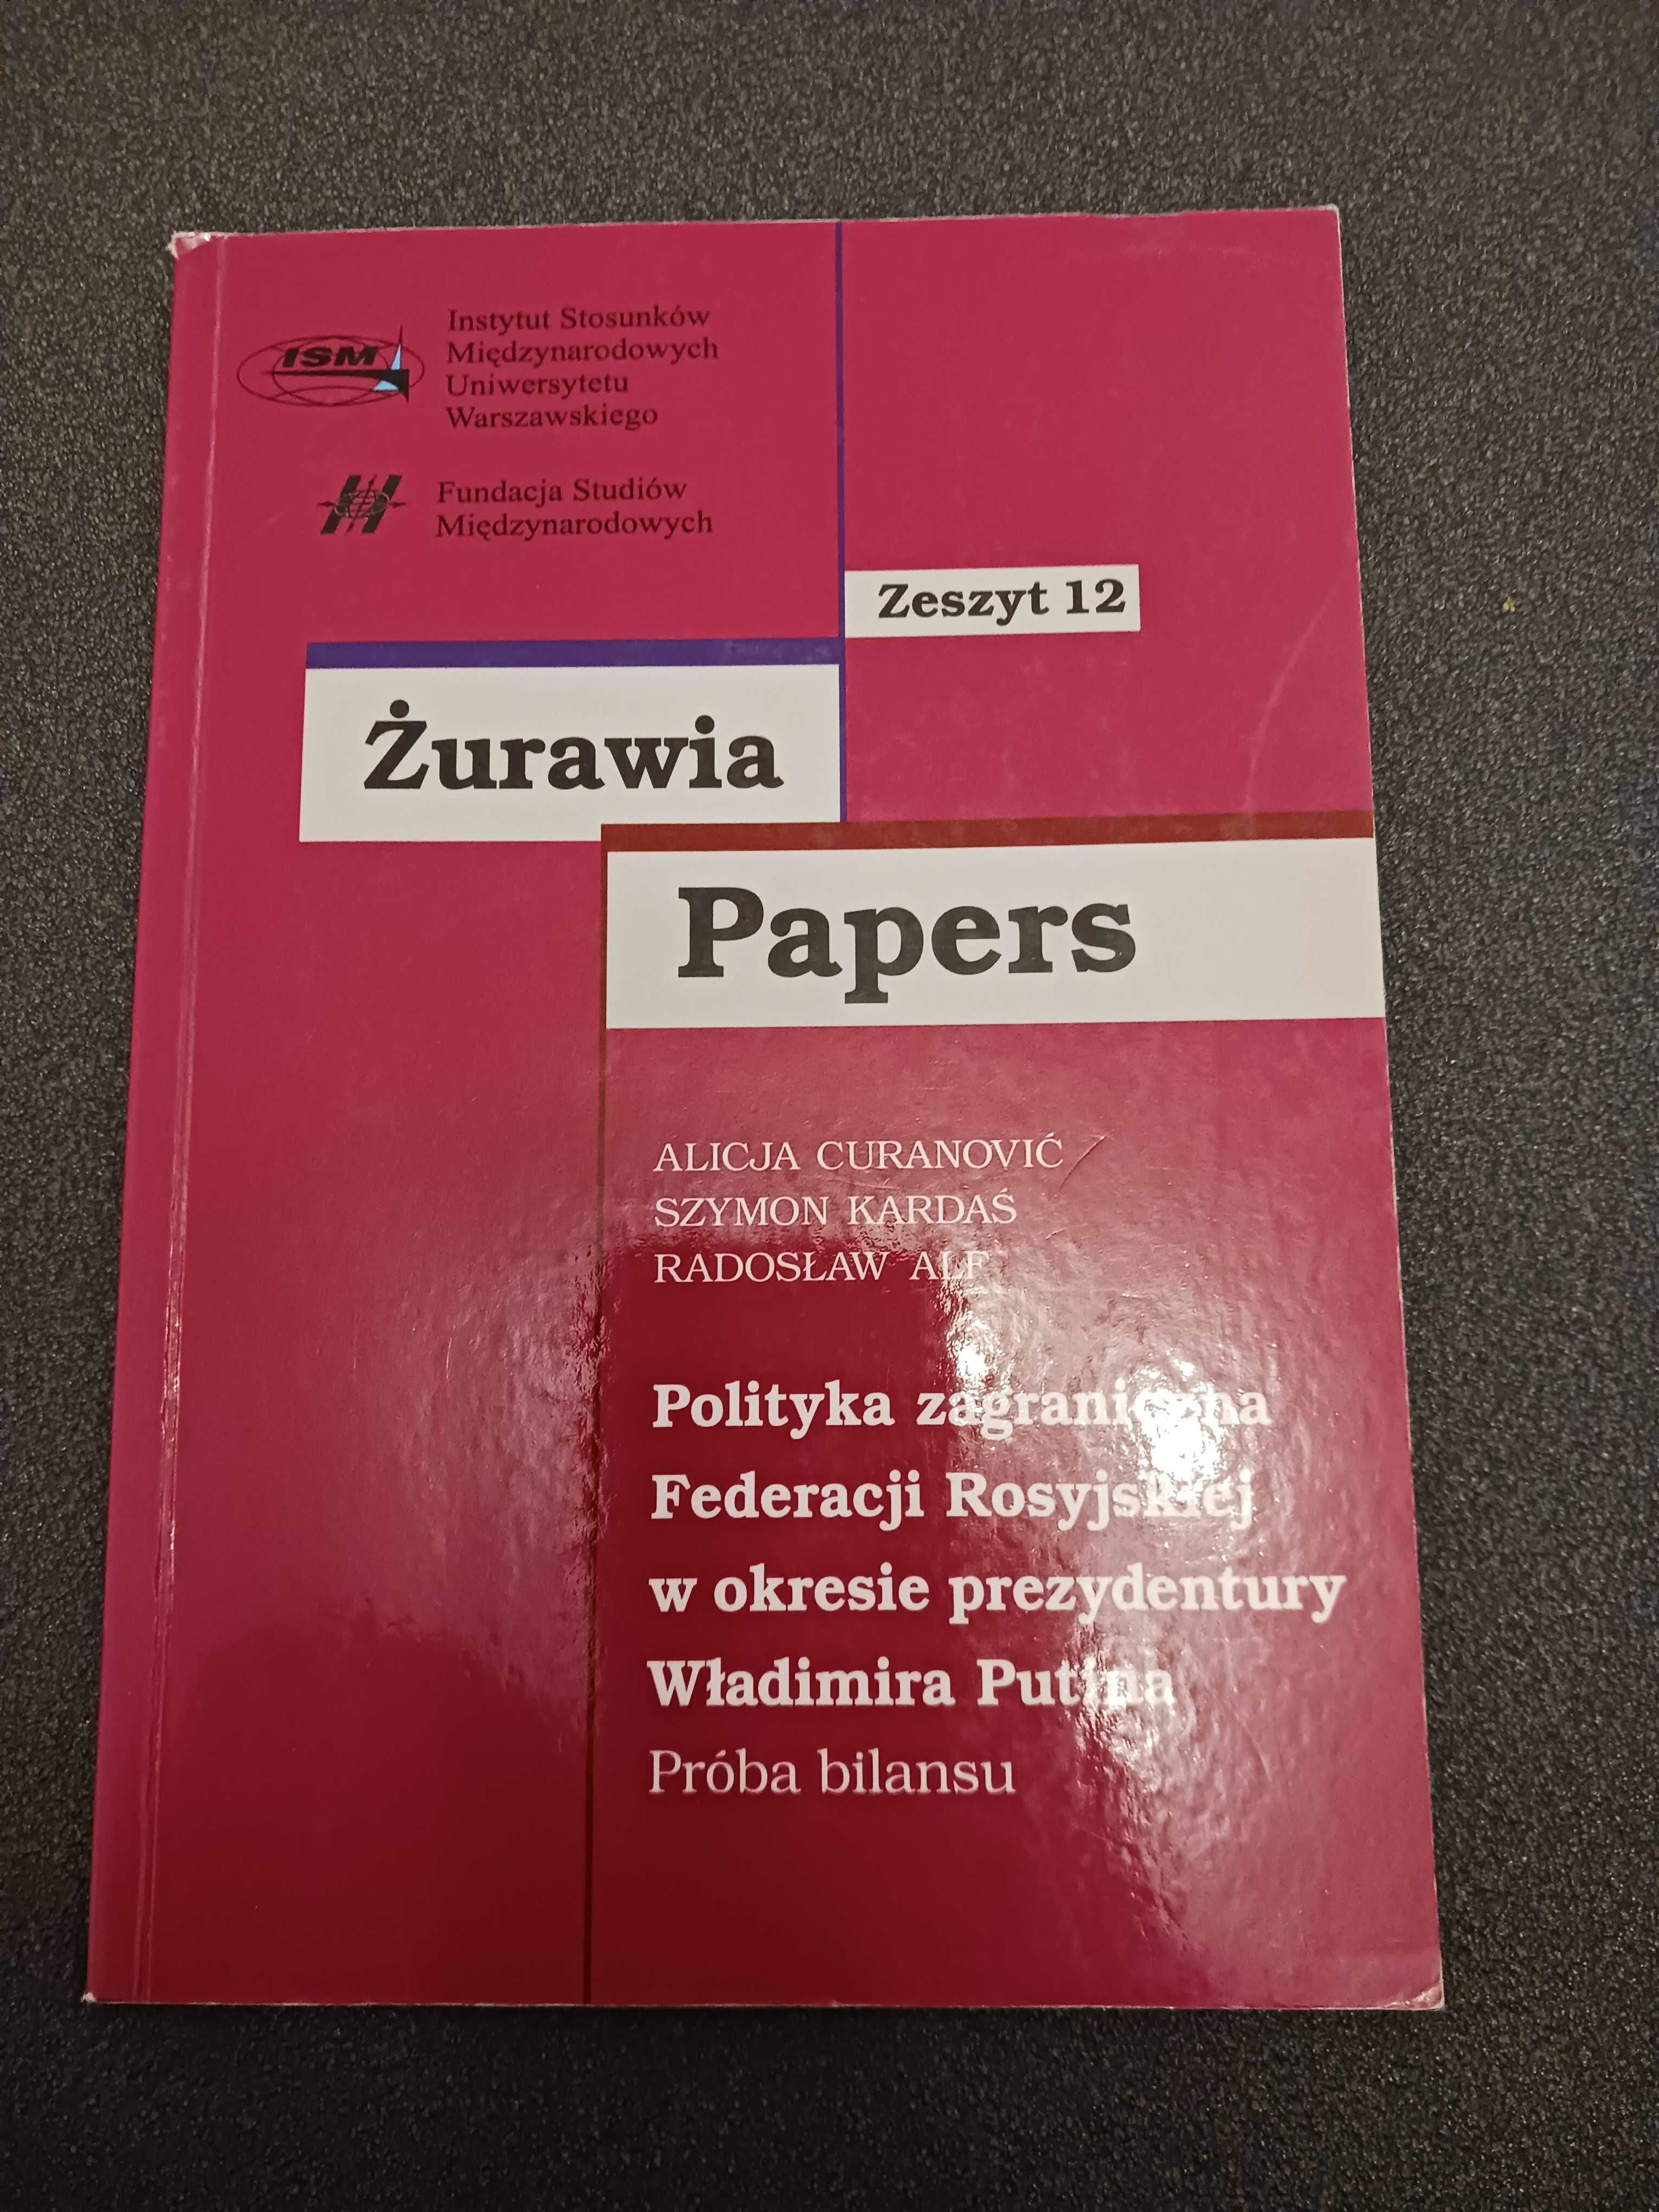 Żurawia Papers, zeszyt 12 / polityka zagraniczna federacji rosyjskiej